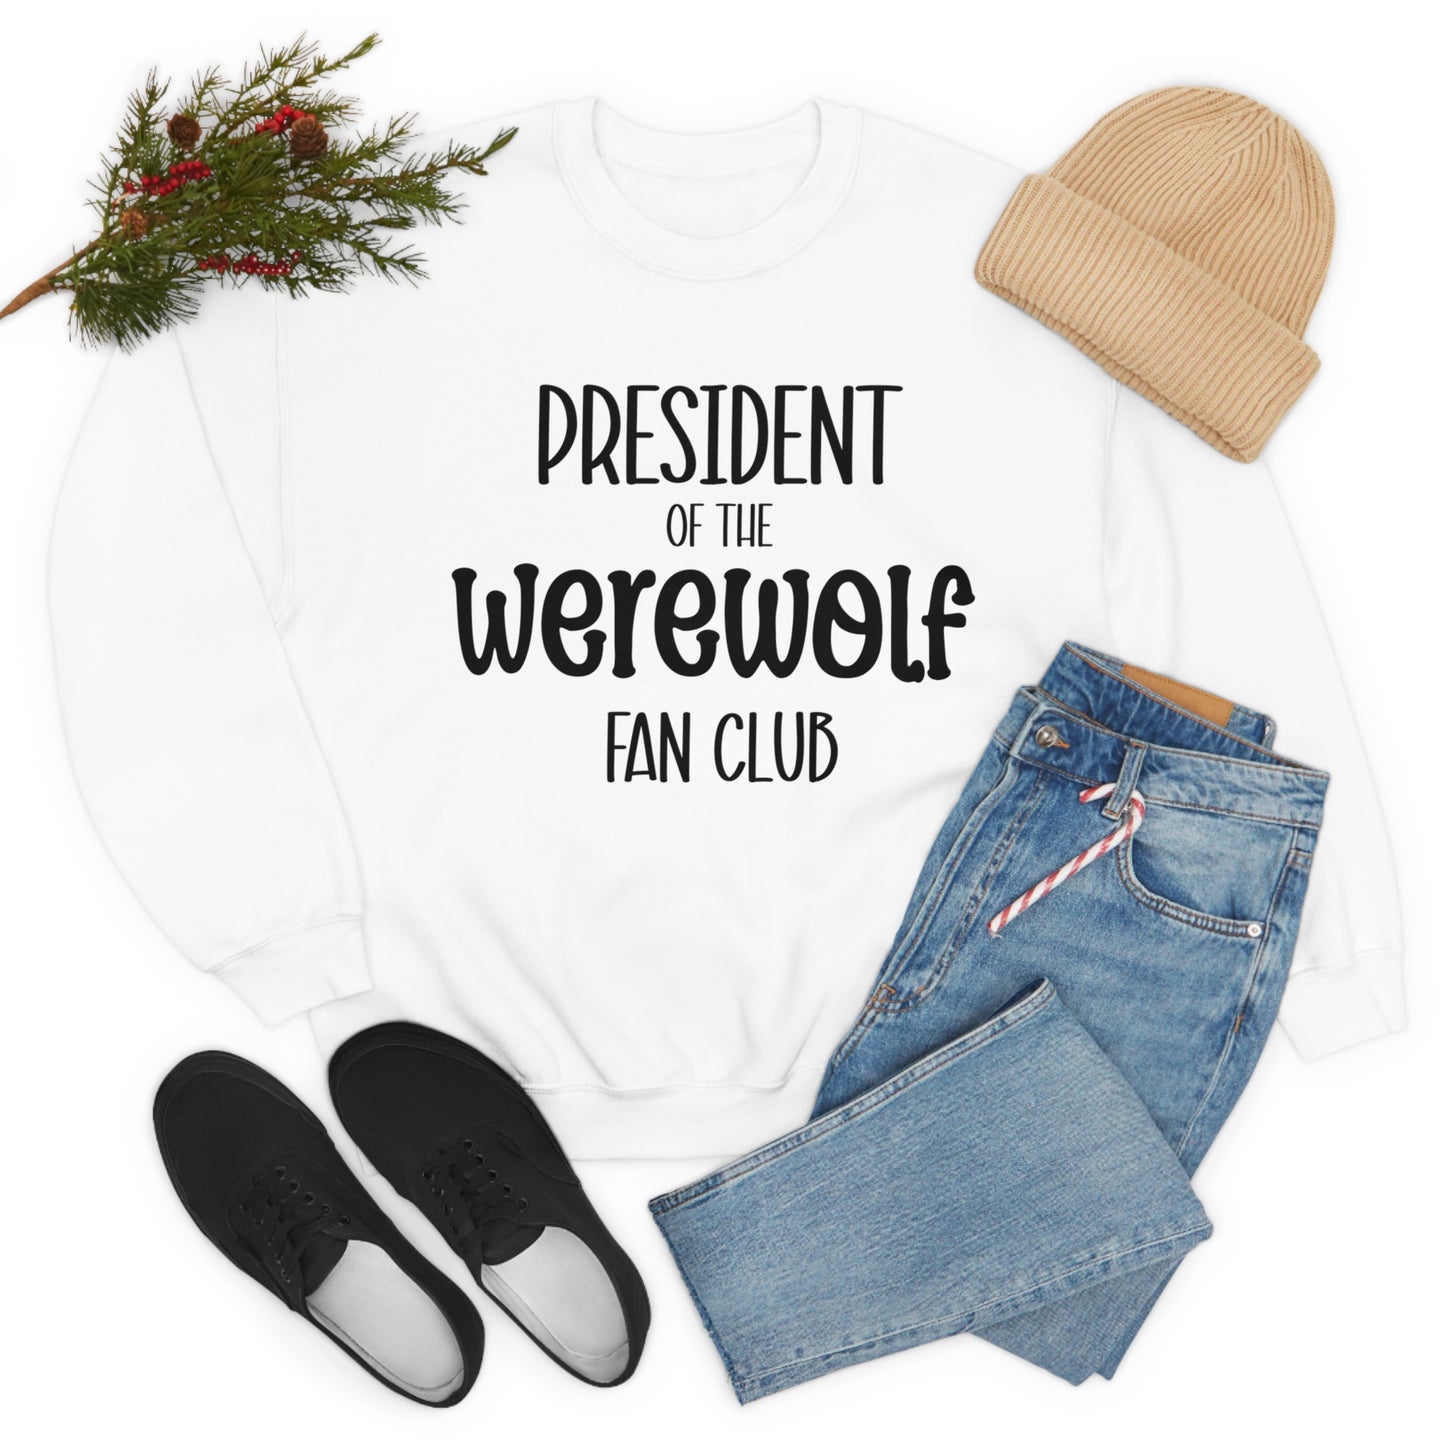 President of the Werewolf Fan Club Crewneck Sweatshirt